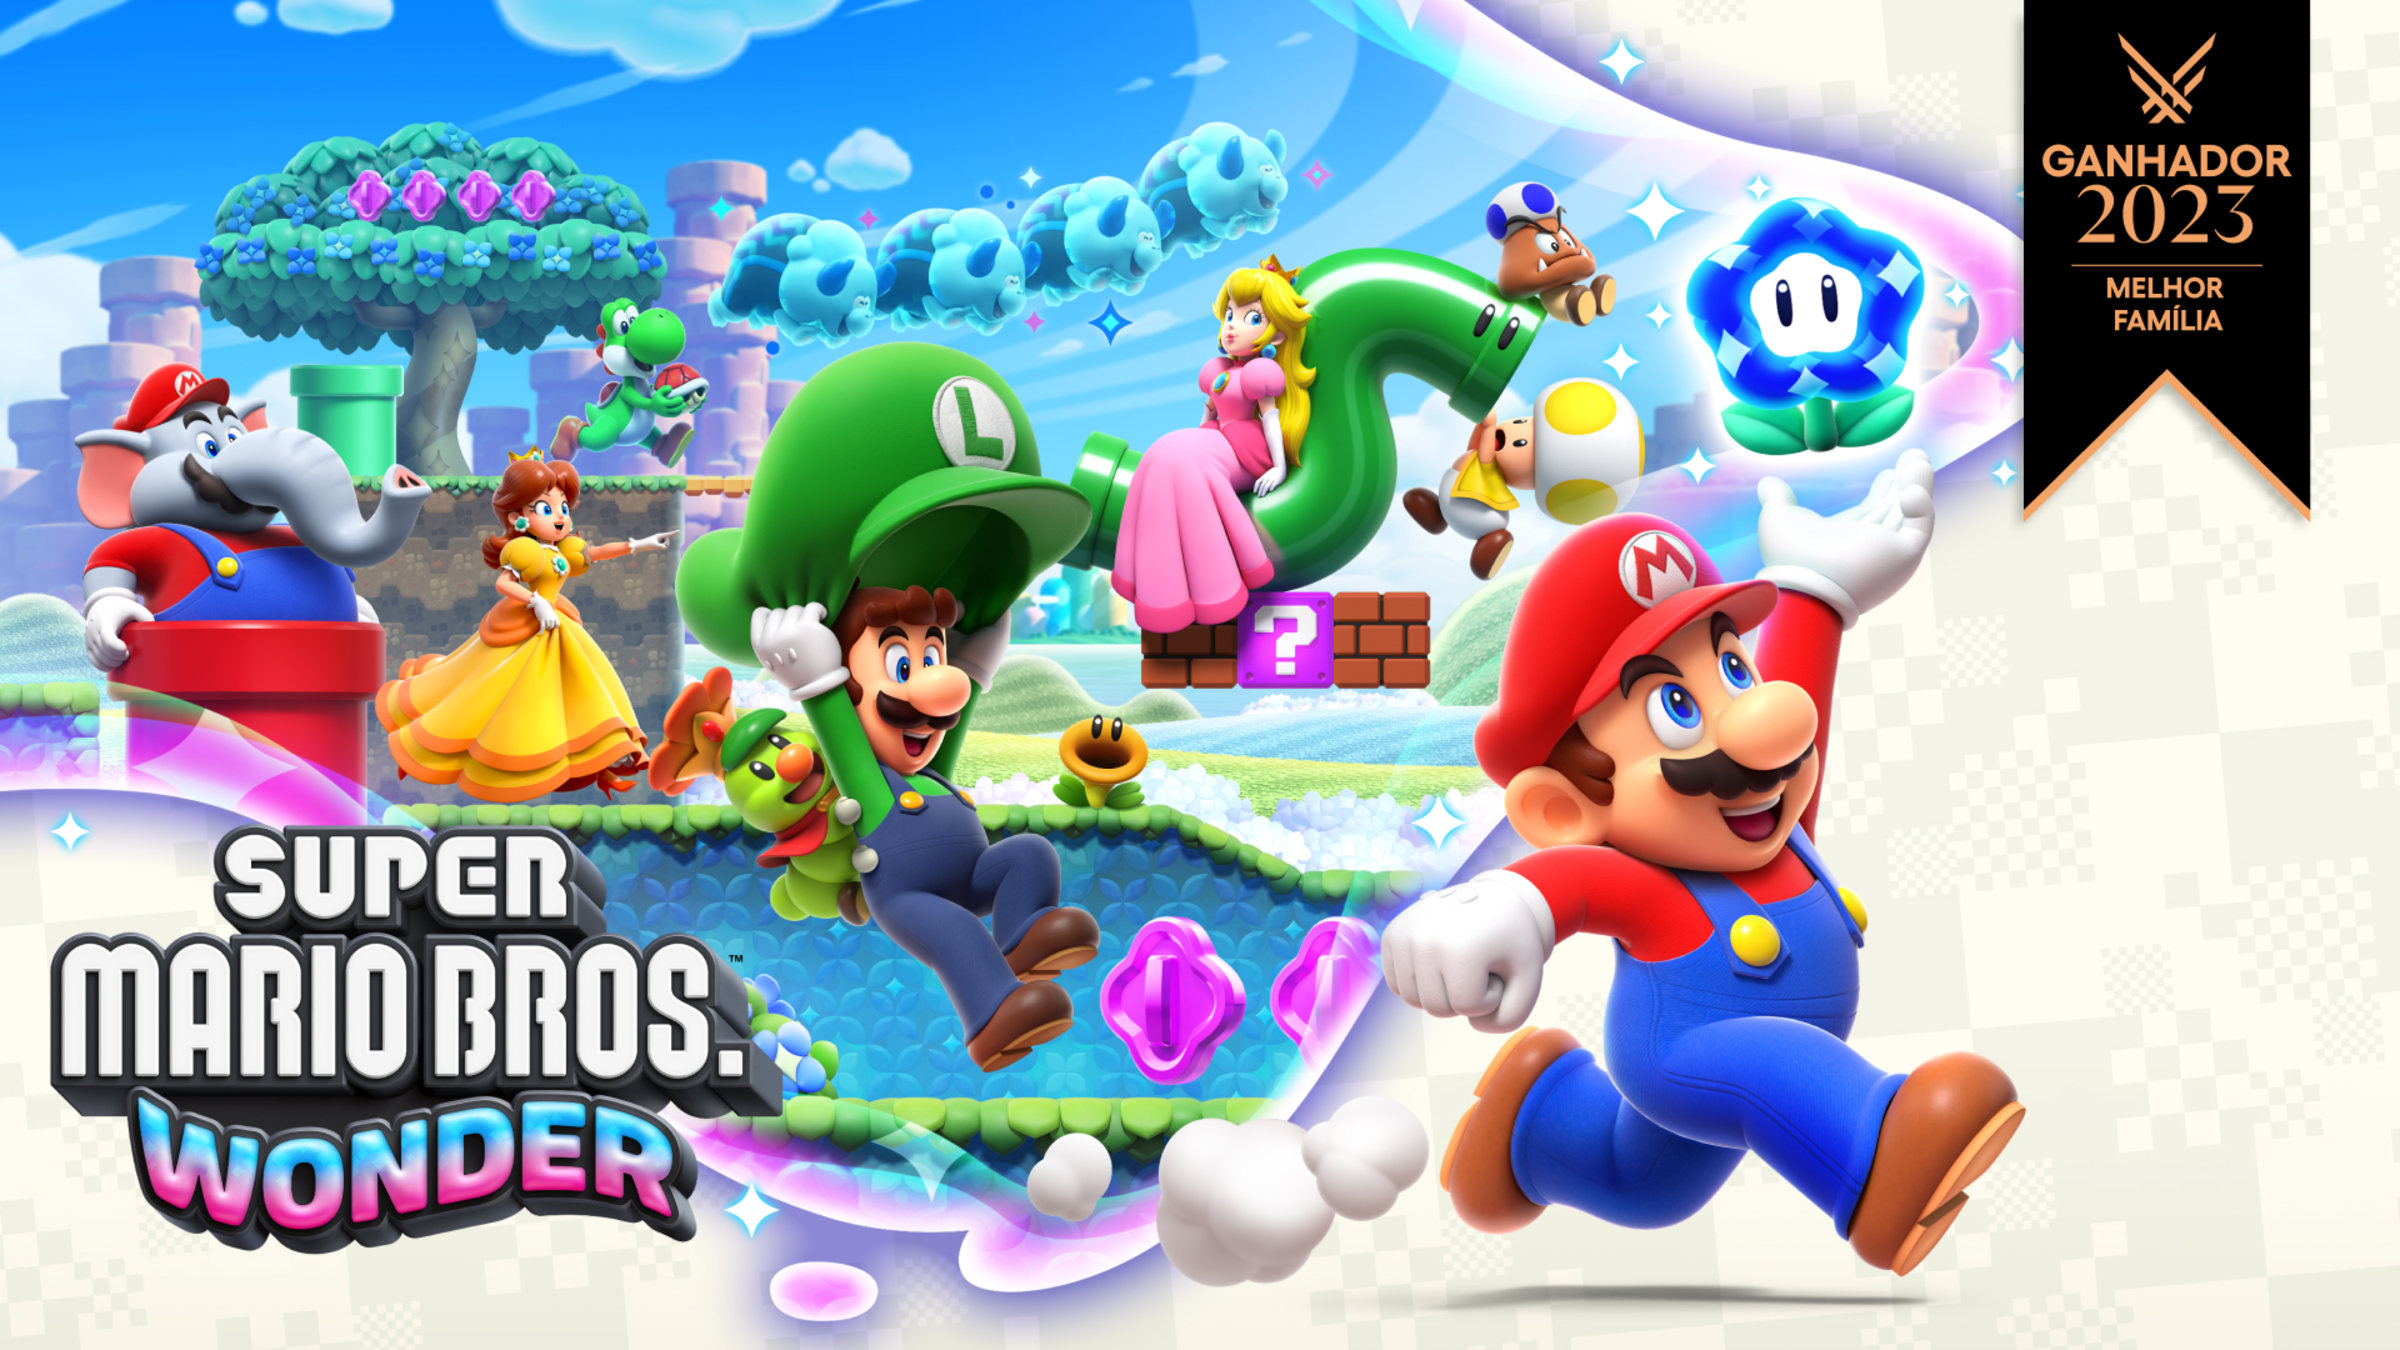 Super Mario Bros Wonder: Como jogar online com seus amigos - Blog do  Dispositivo